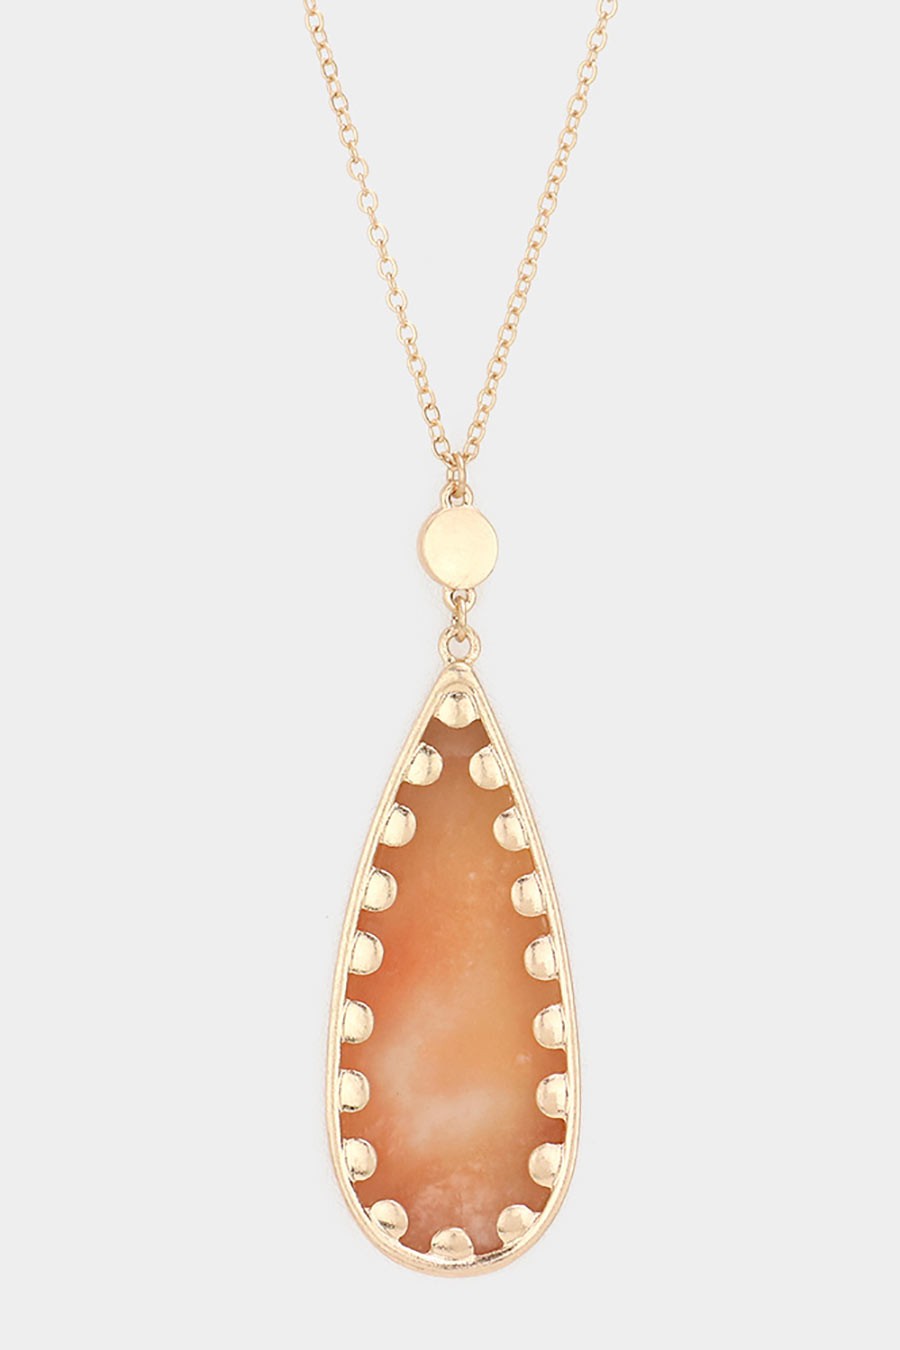 Gold Peach Long Teardrop Pendant Necklace